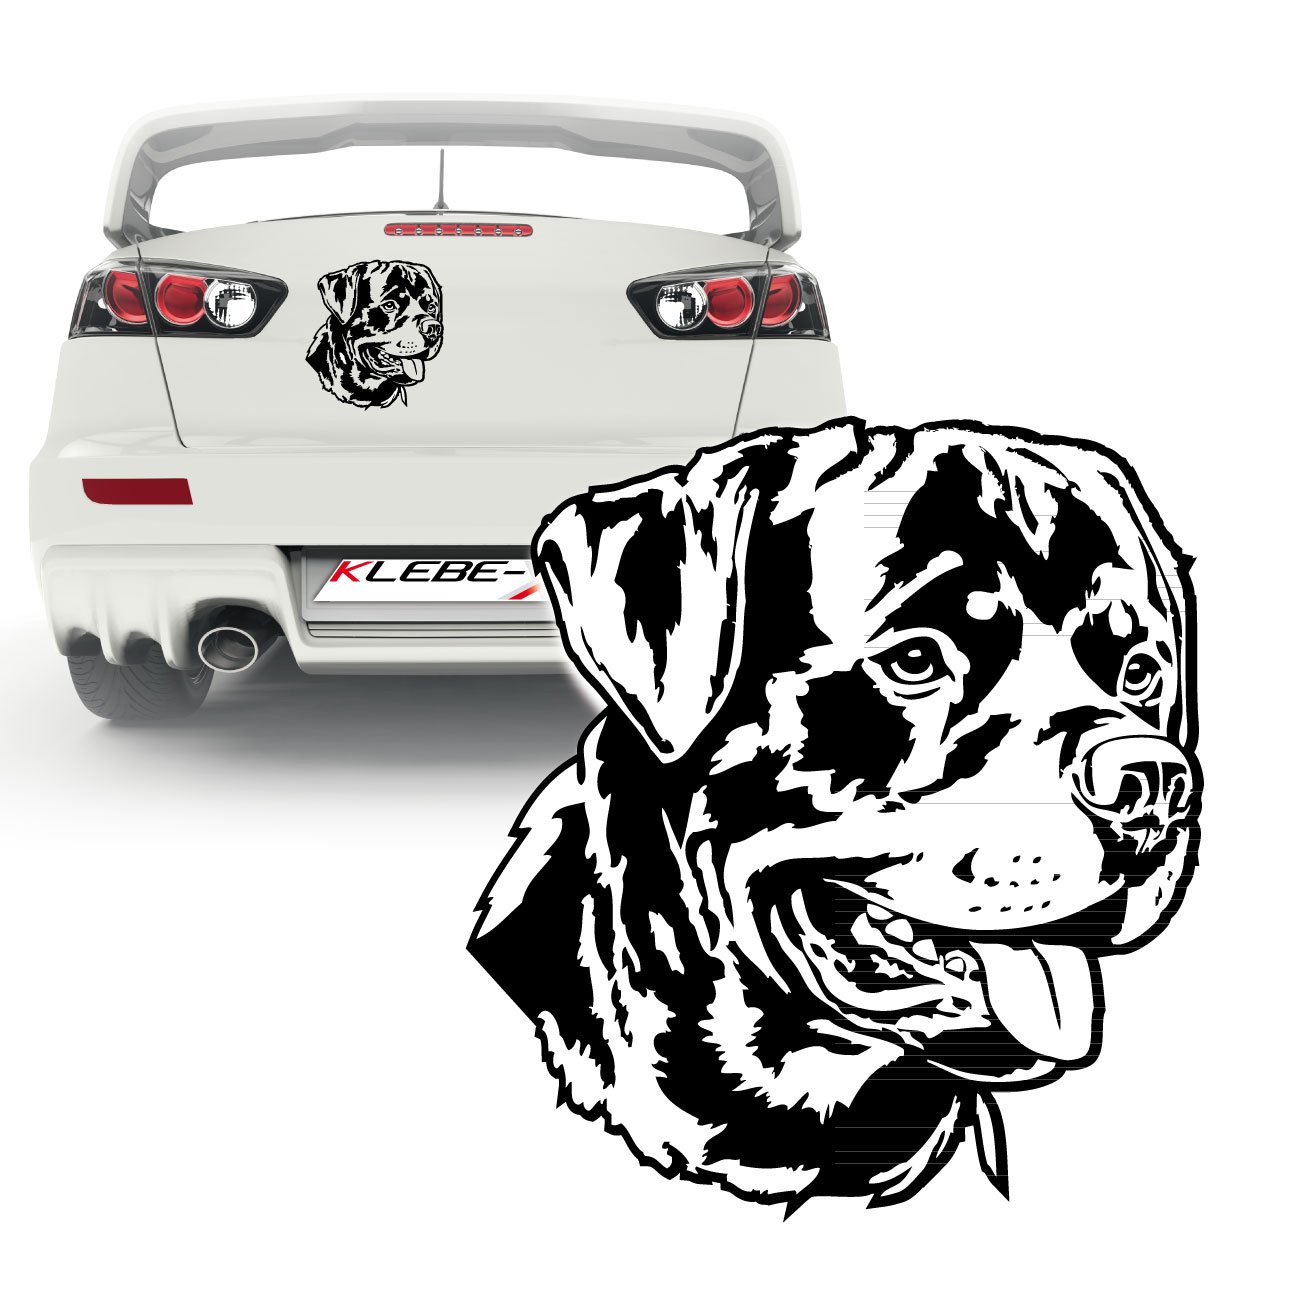 Hundemotiv Rottweiler Auto- oder Wandtattoo Dog Aufkleber | KB213V3 von Klebe-X